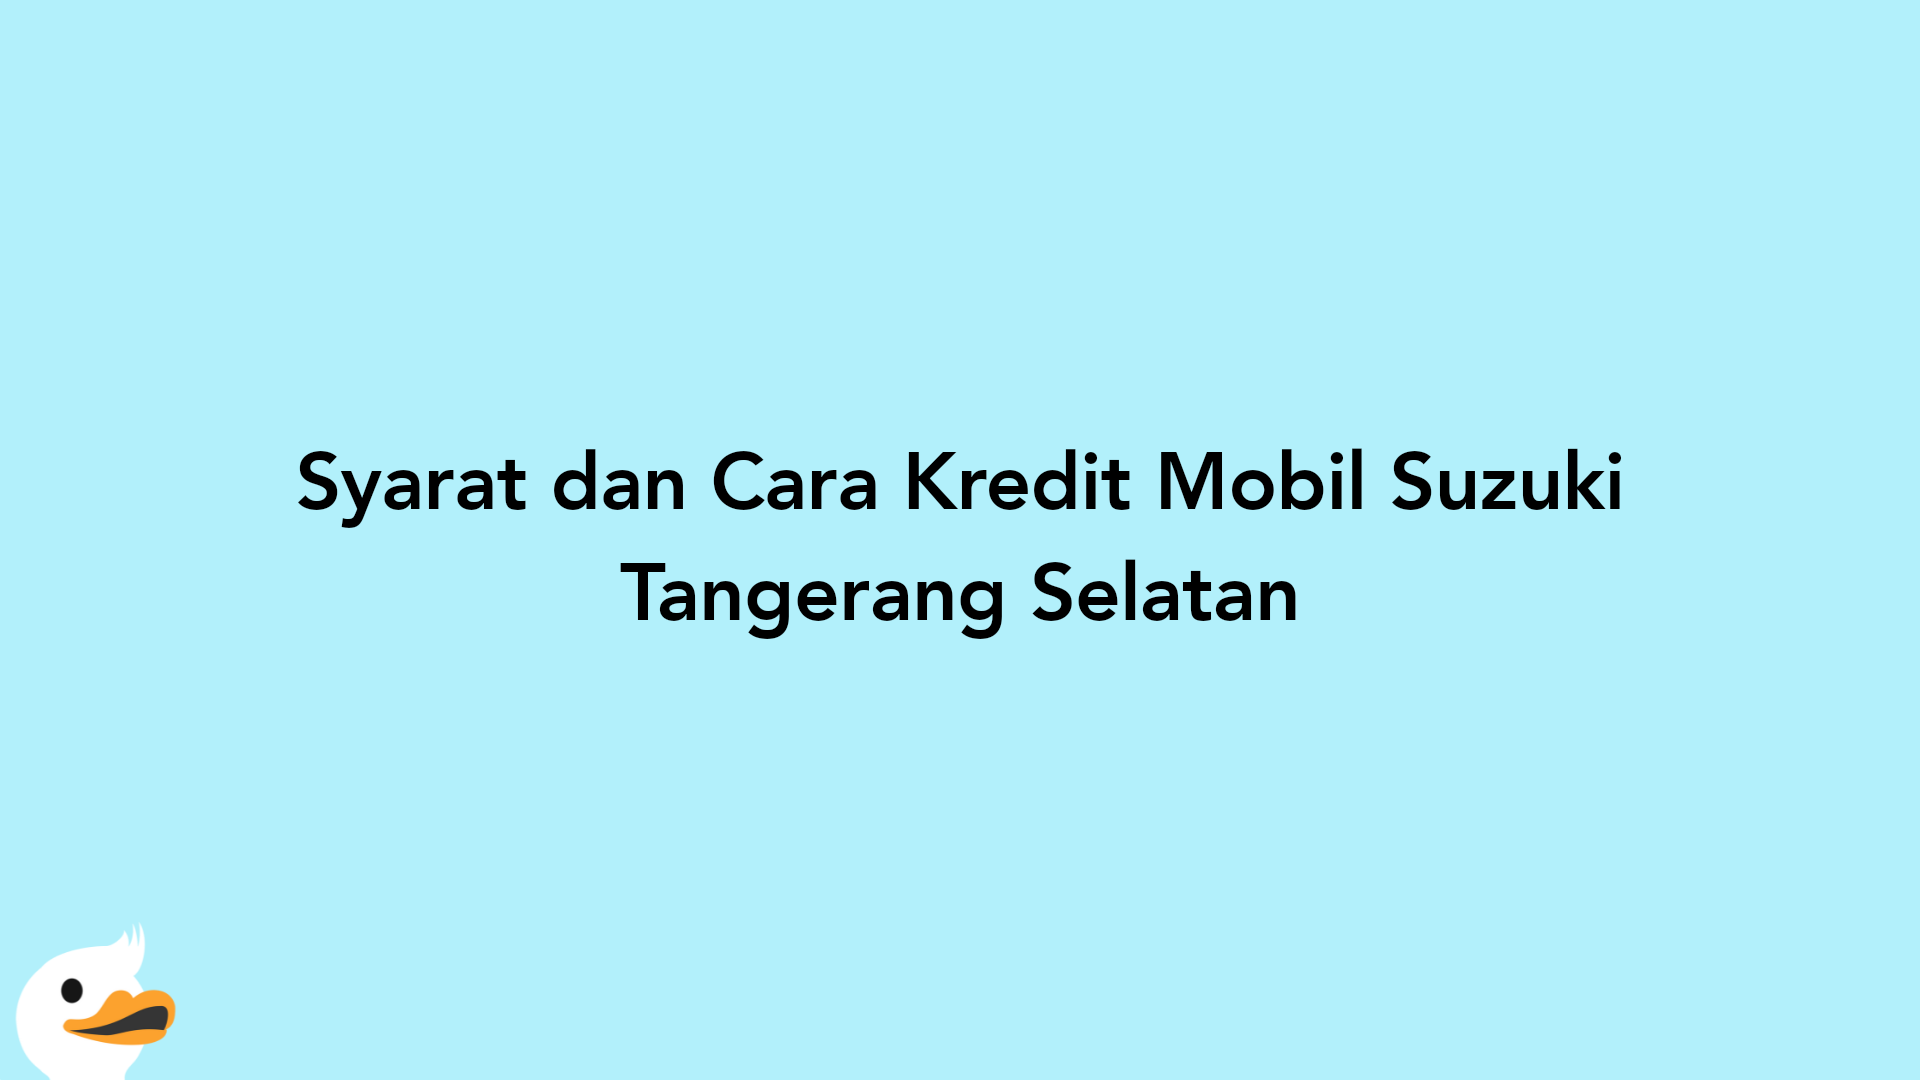 Syarat dan Cara Kredit Mobil Suzuki Tangerang Selatan